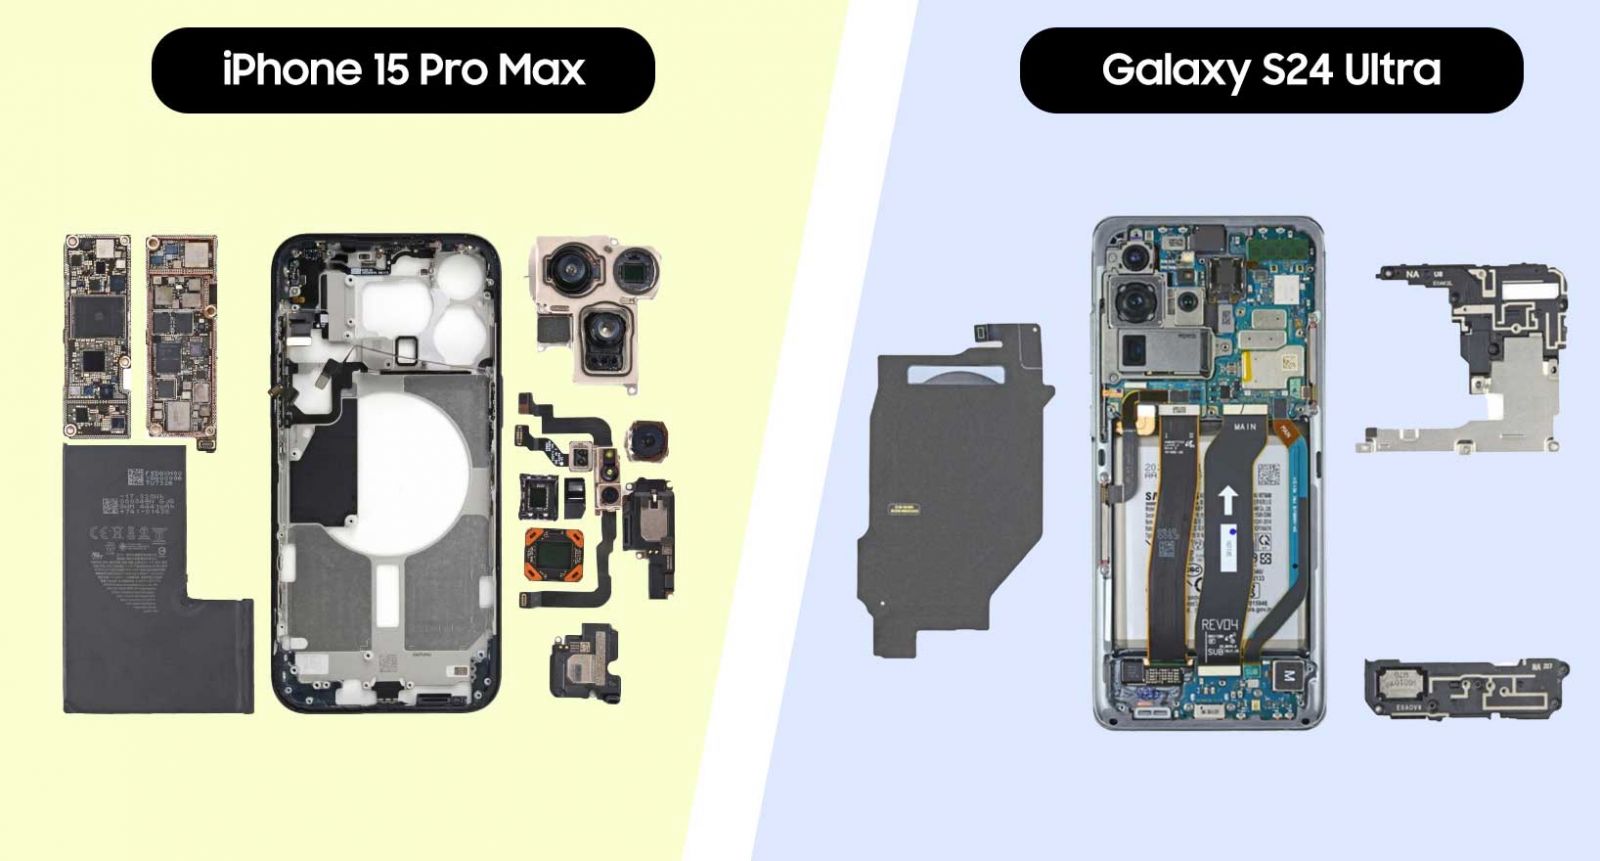 سخت افزار Galaxy S24 ultra و iphone 15 pro max